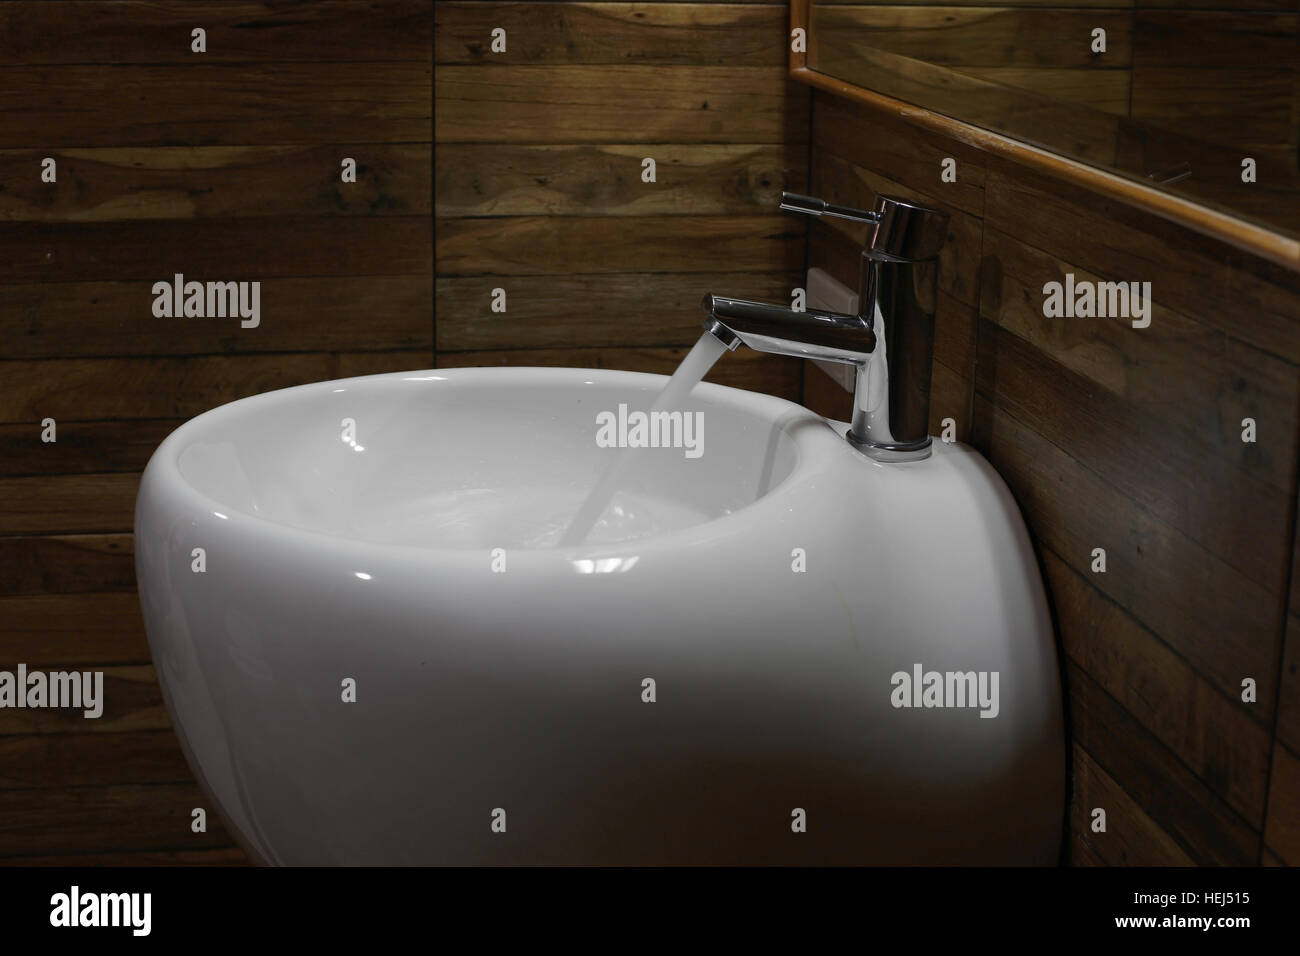 Salle de bain évier avec eau courante à partir de robinet Banque D'Images